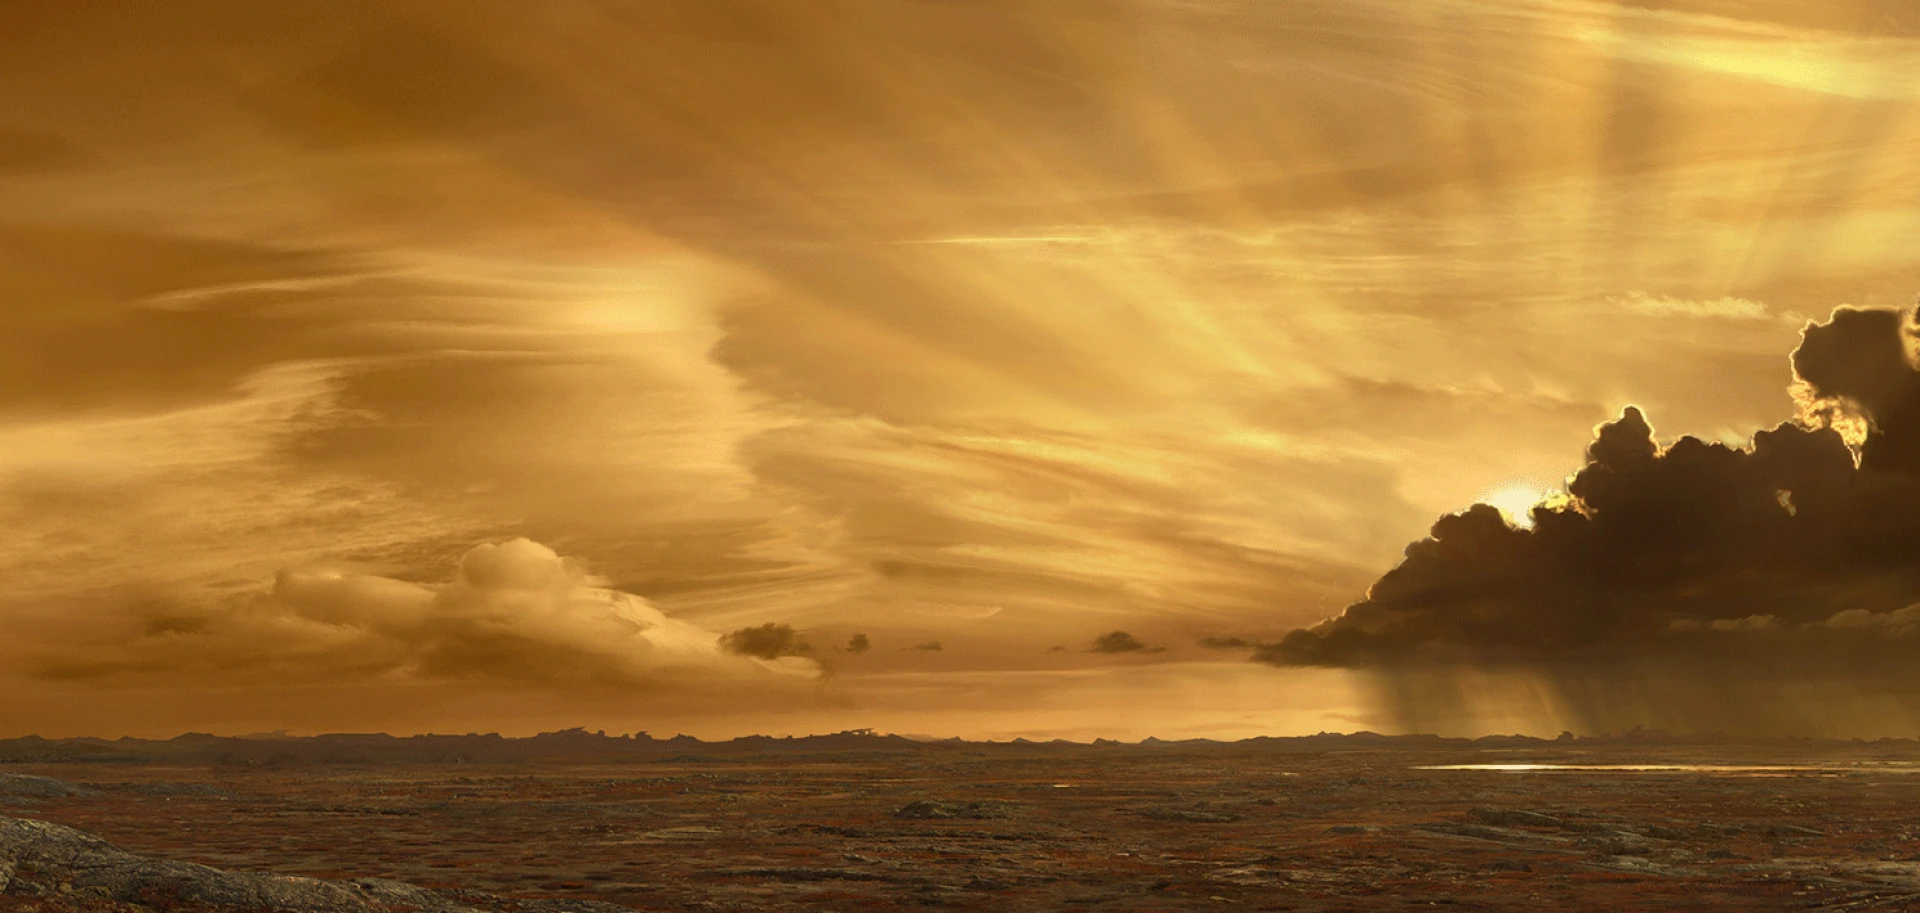 Riddick sunset shot from Raynault vfx